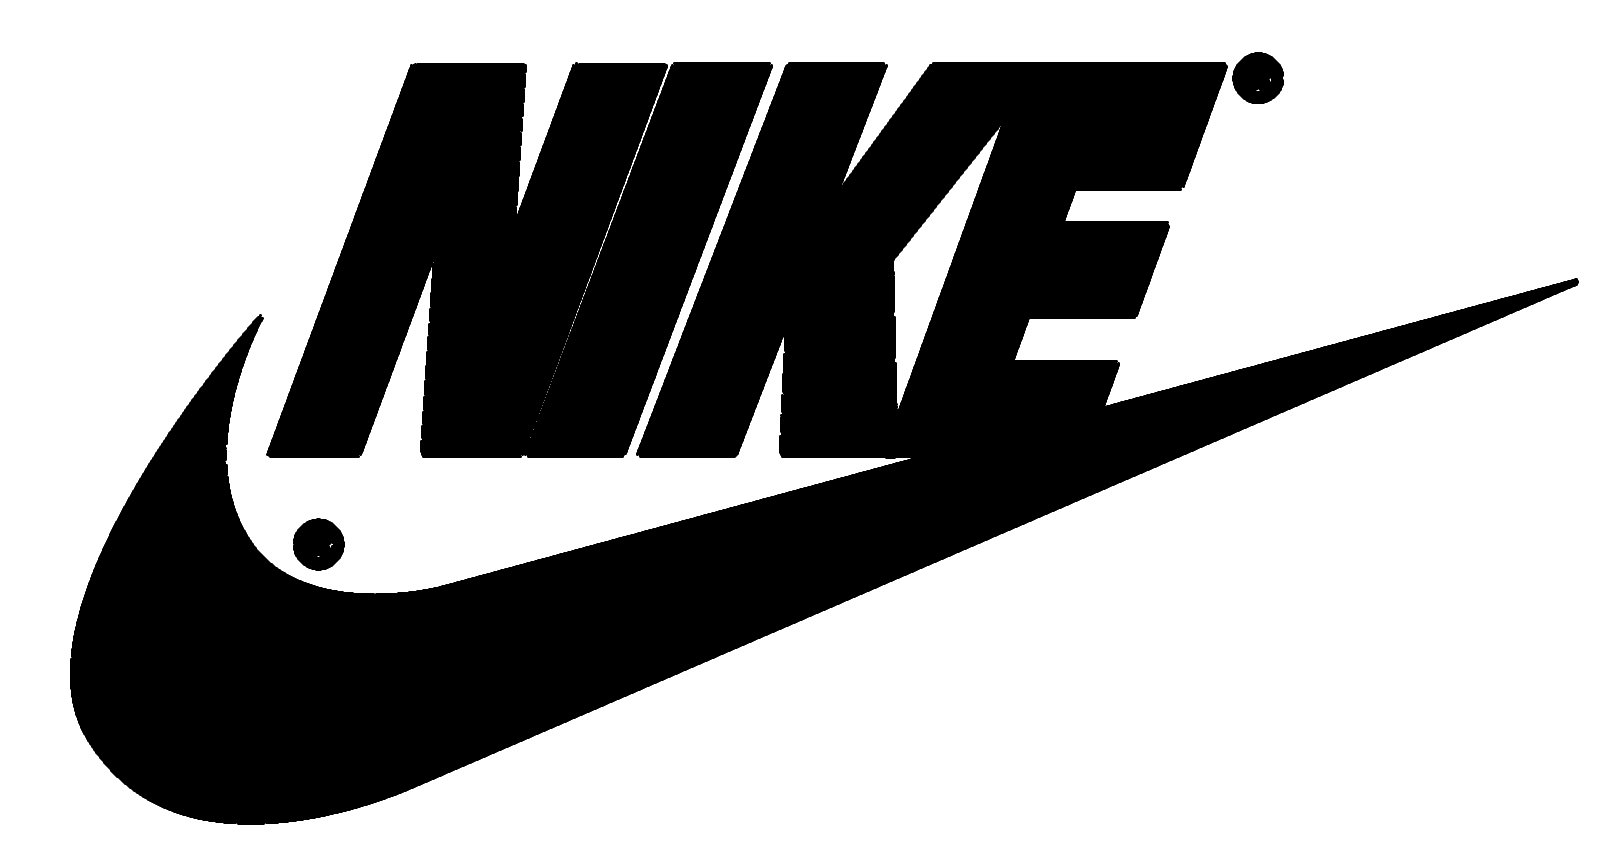 Nike Name